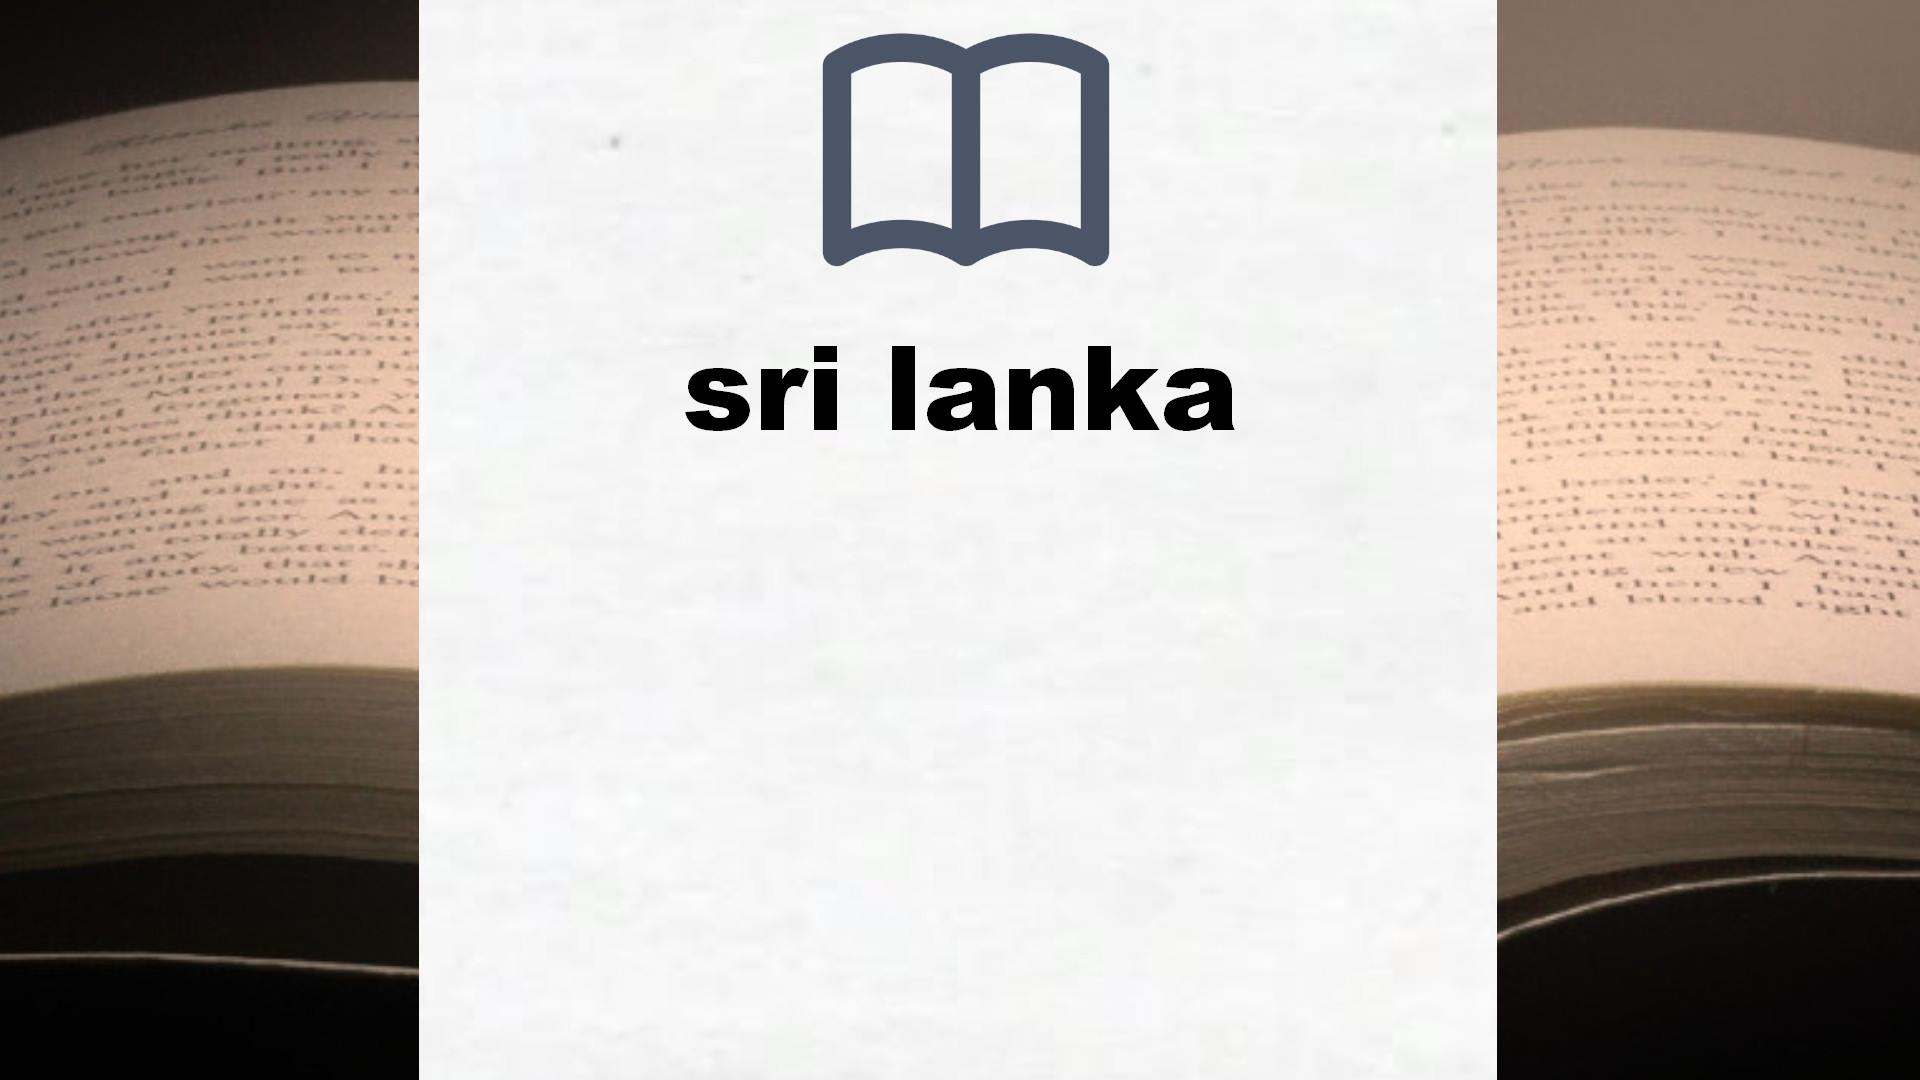 Libros sobre sri lanka